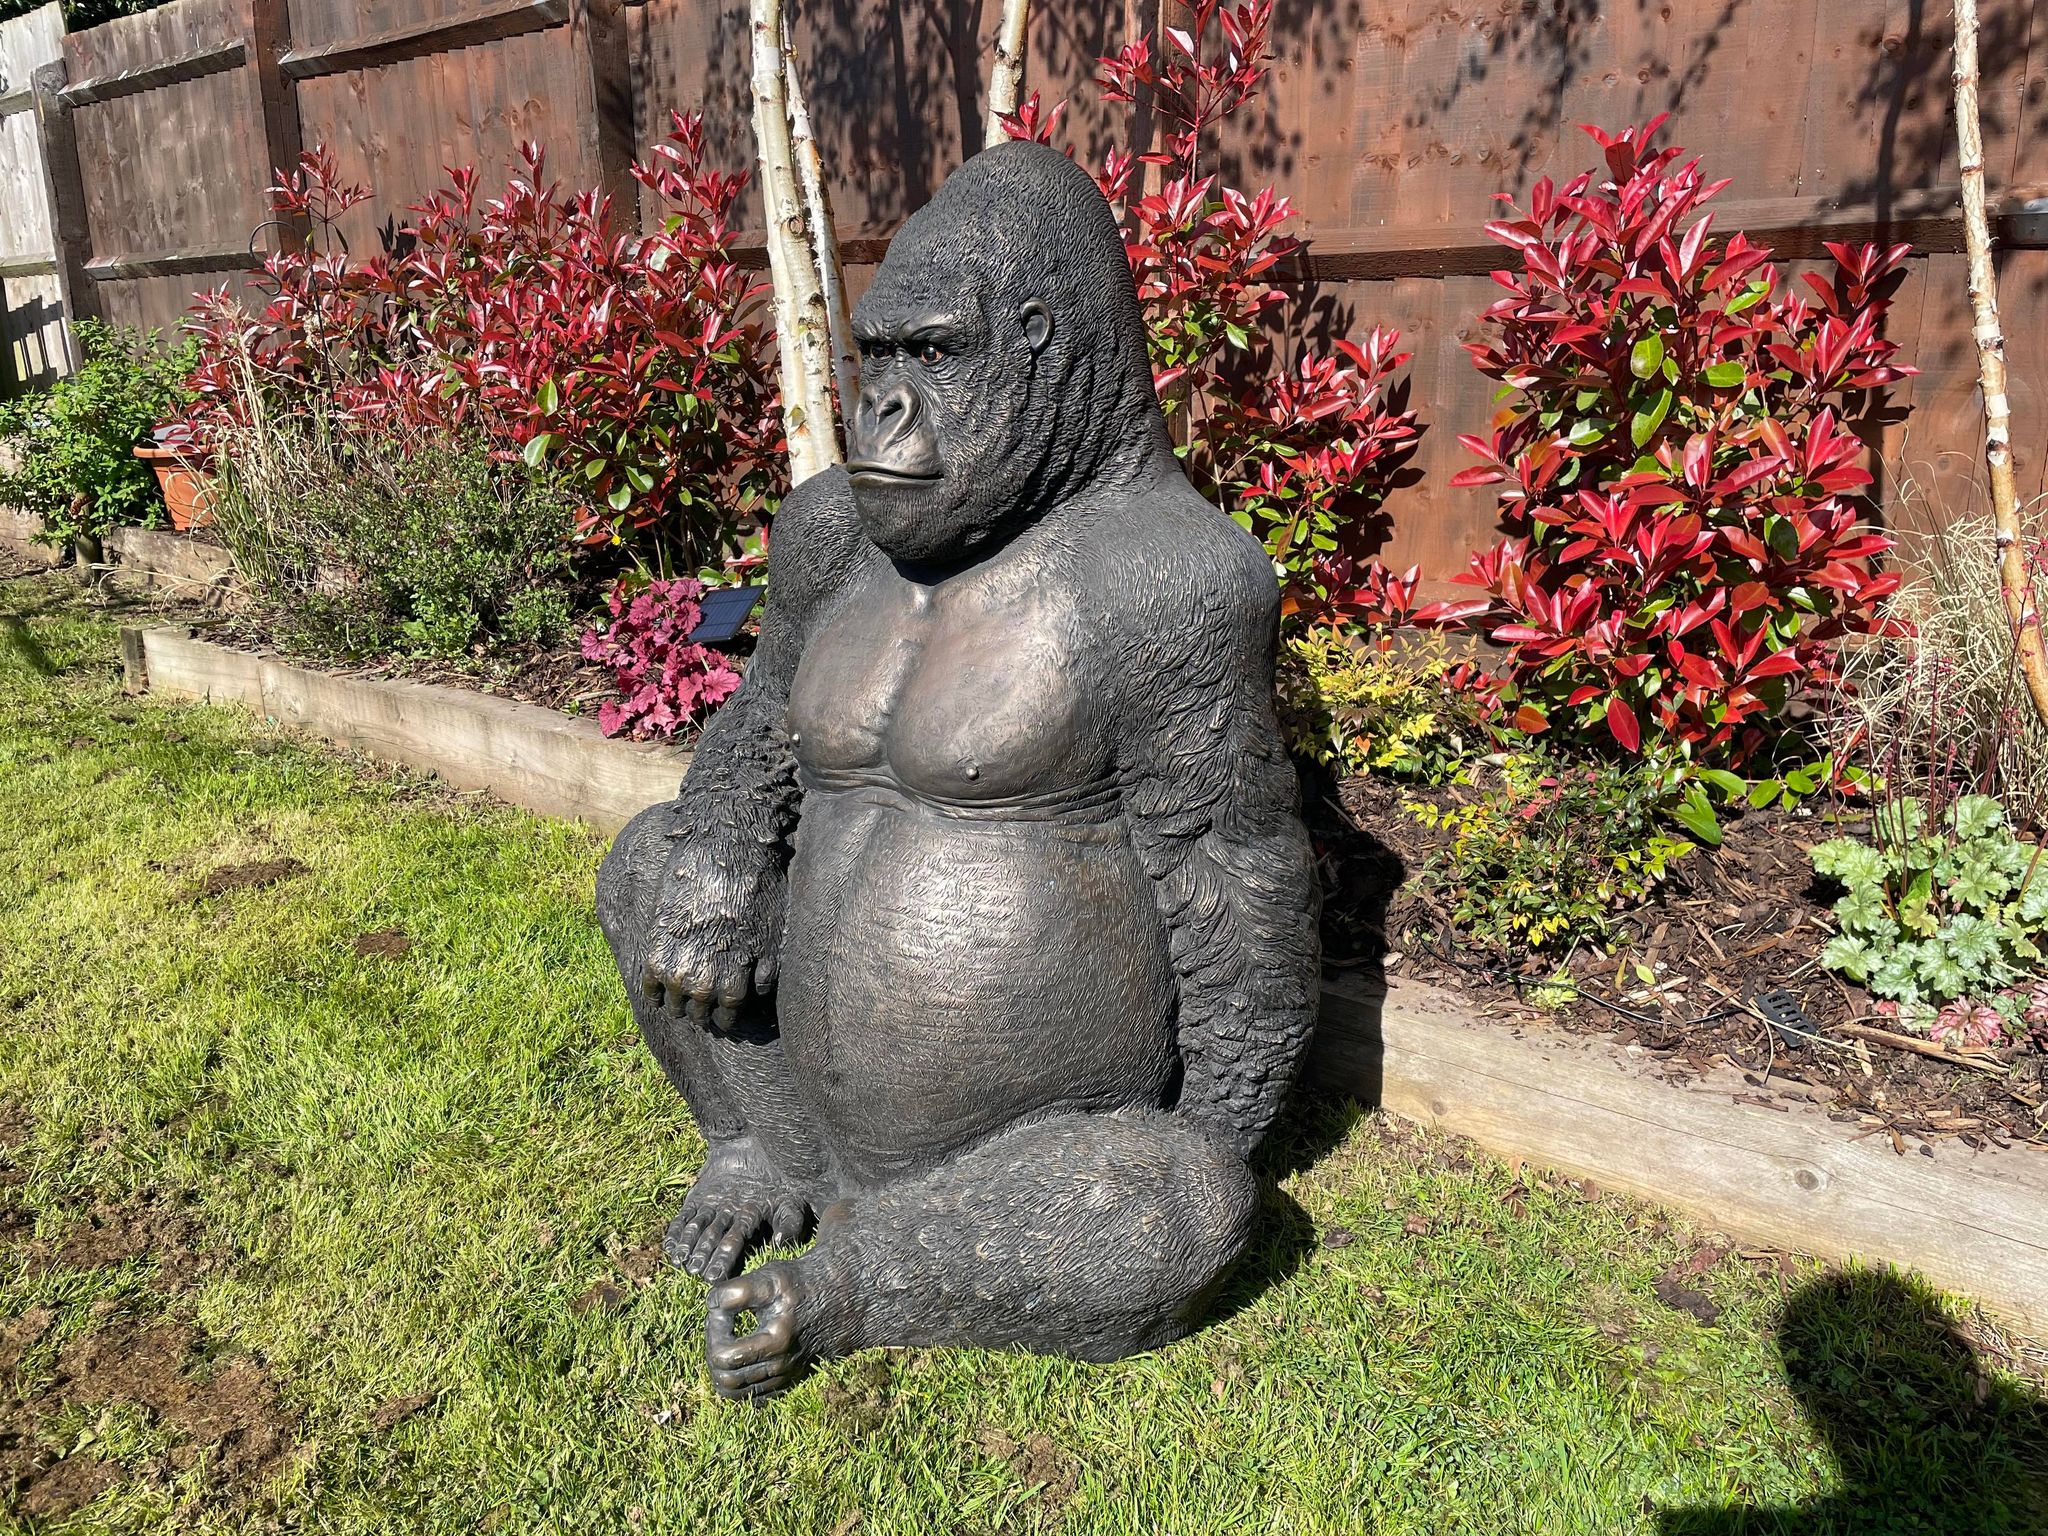 Life-Size Gorilla Statue